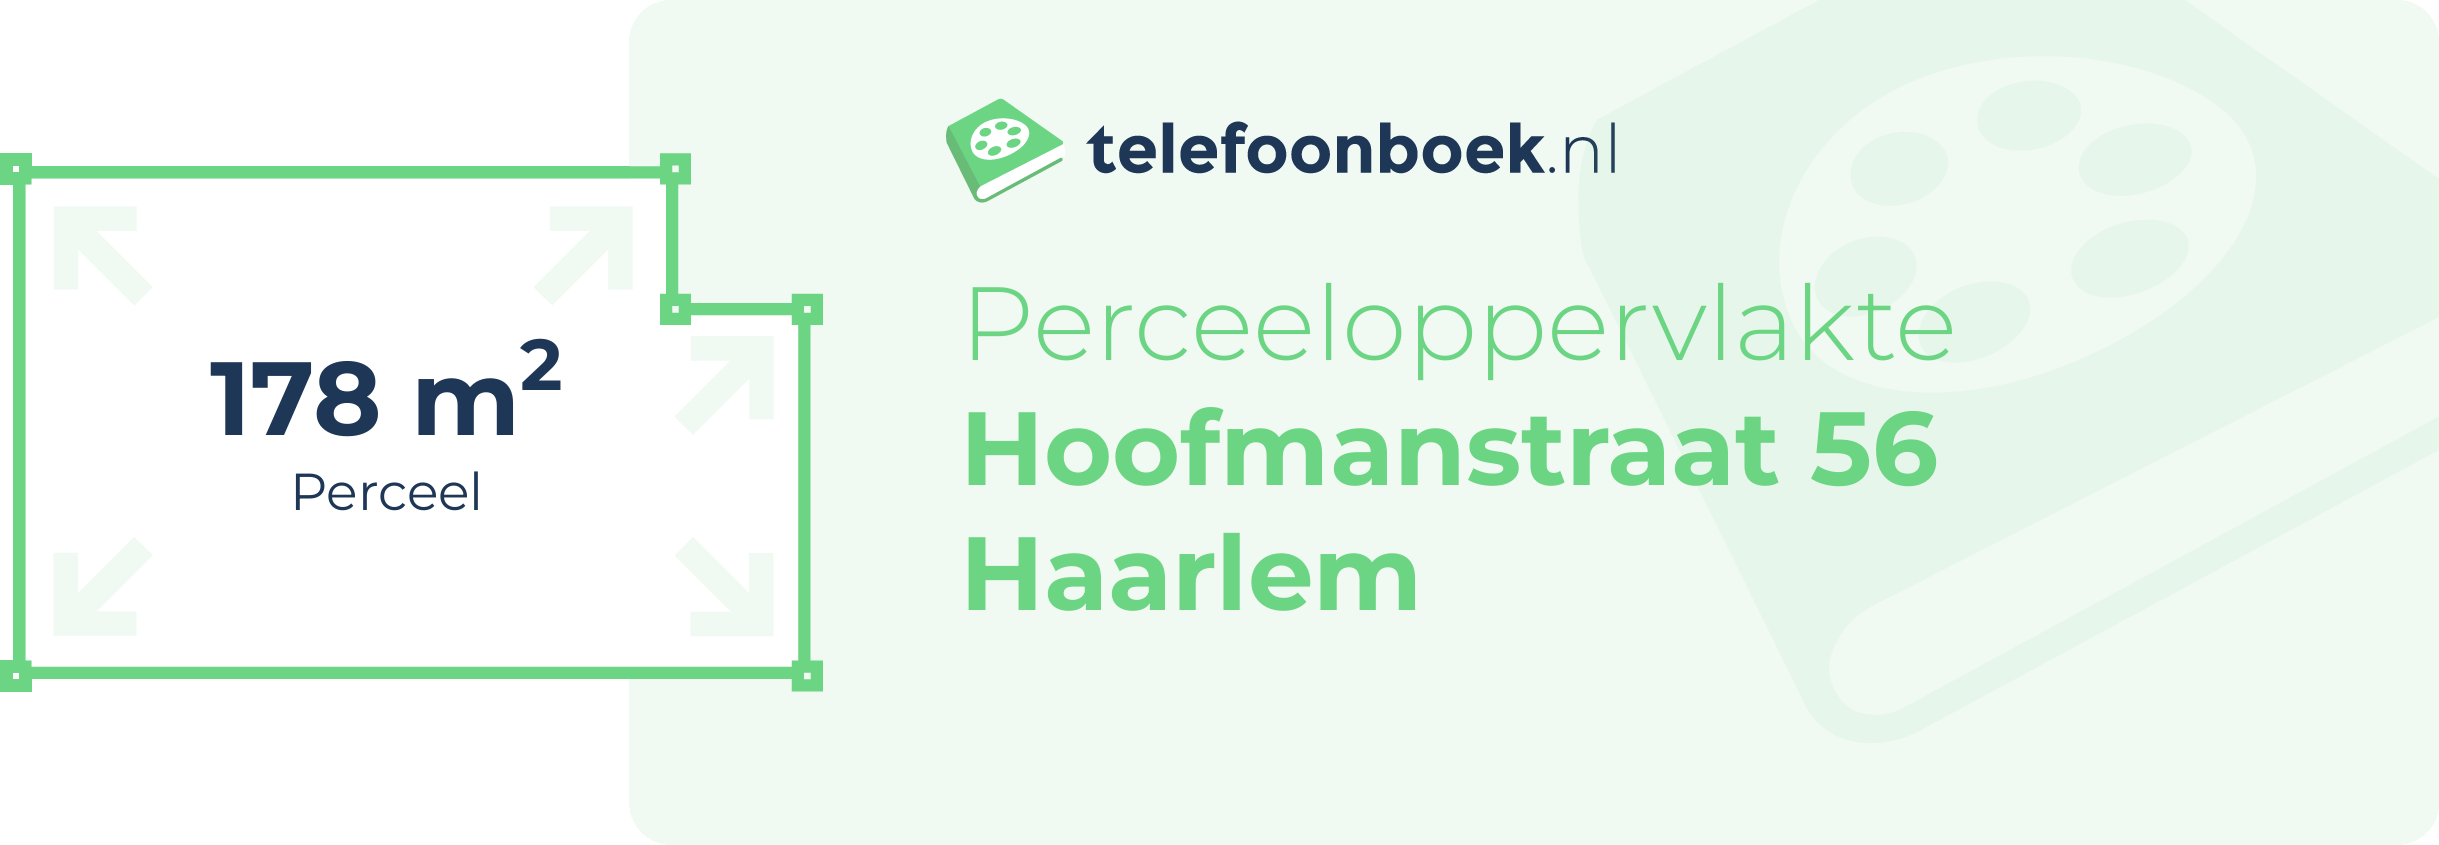 Perceeloppervlakte Hoofmanstraat 56 Haarlem